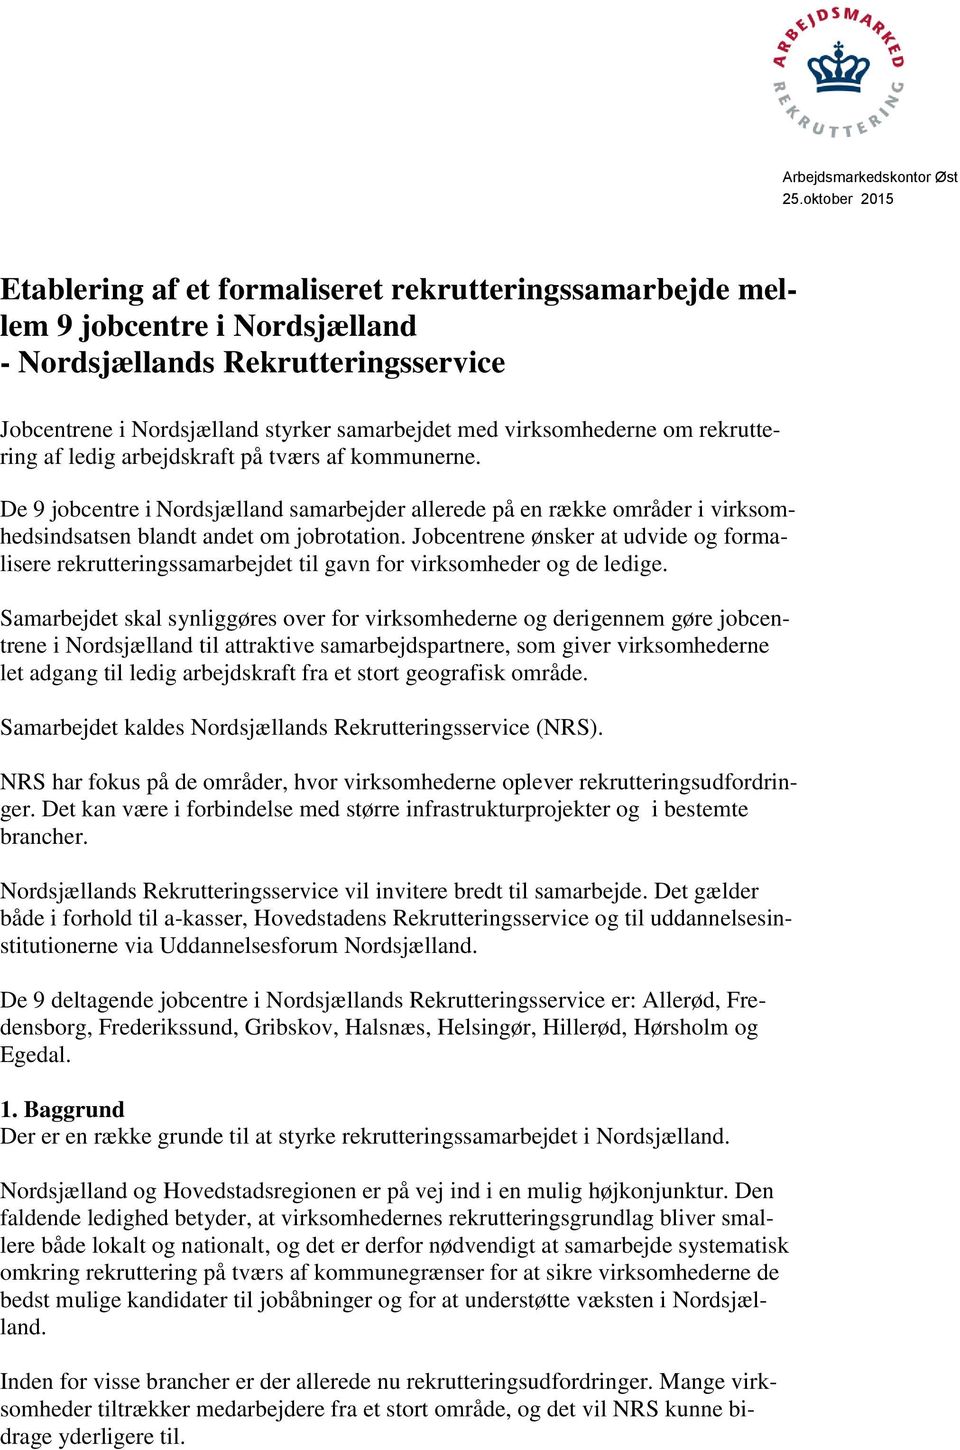 virksomhederne om rekruttering af ledig arbejdskraft på tværs af kommunerne. De 9 jobcentre i Nordsjælland samarbejder allerede på en række områder i virksomhedsindsatsen blandt andet om jobrotation.